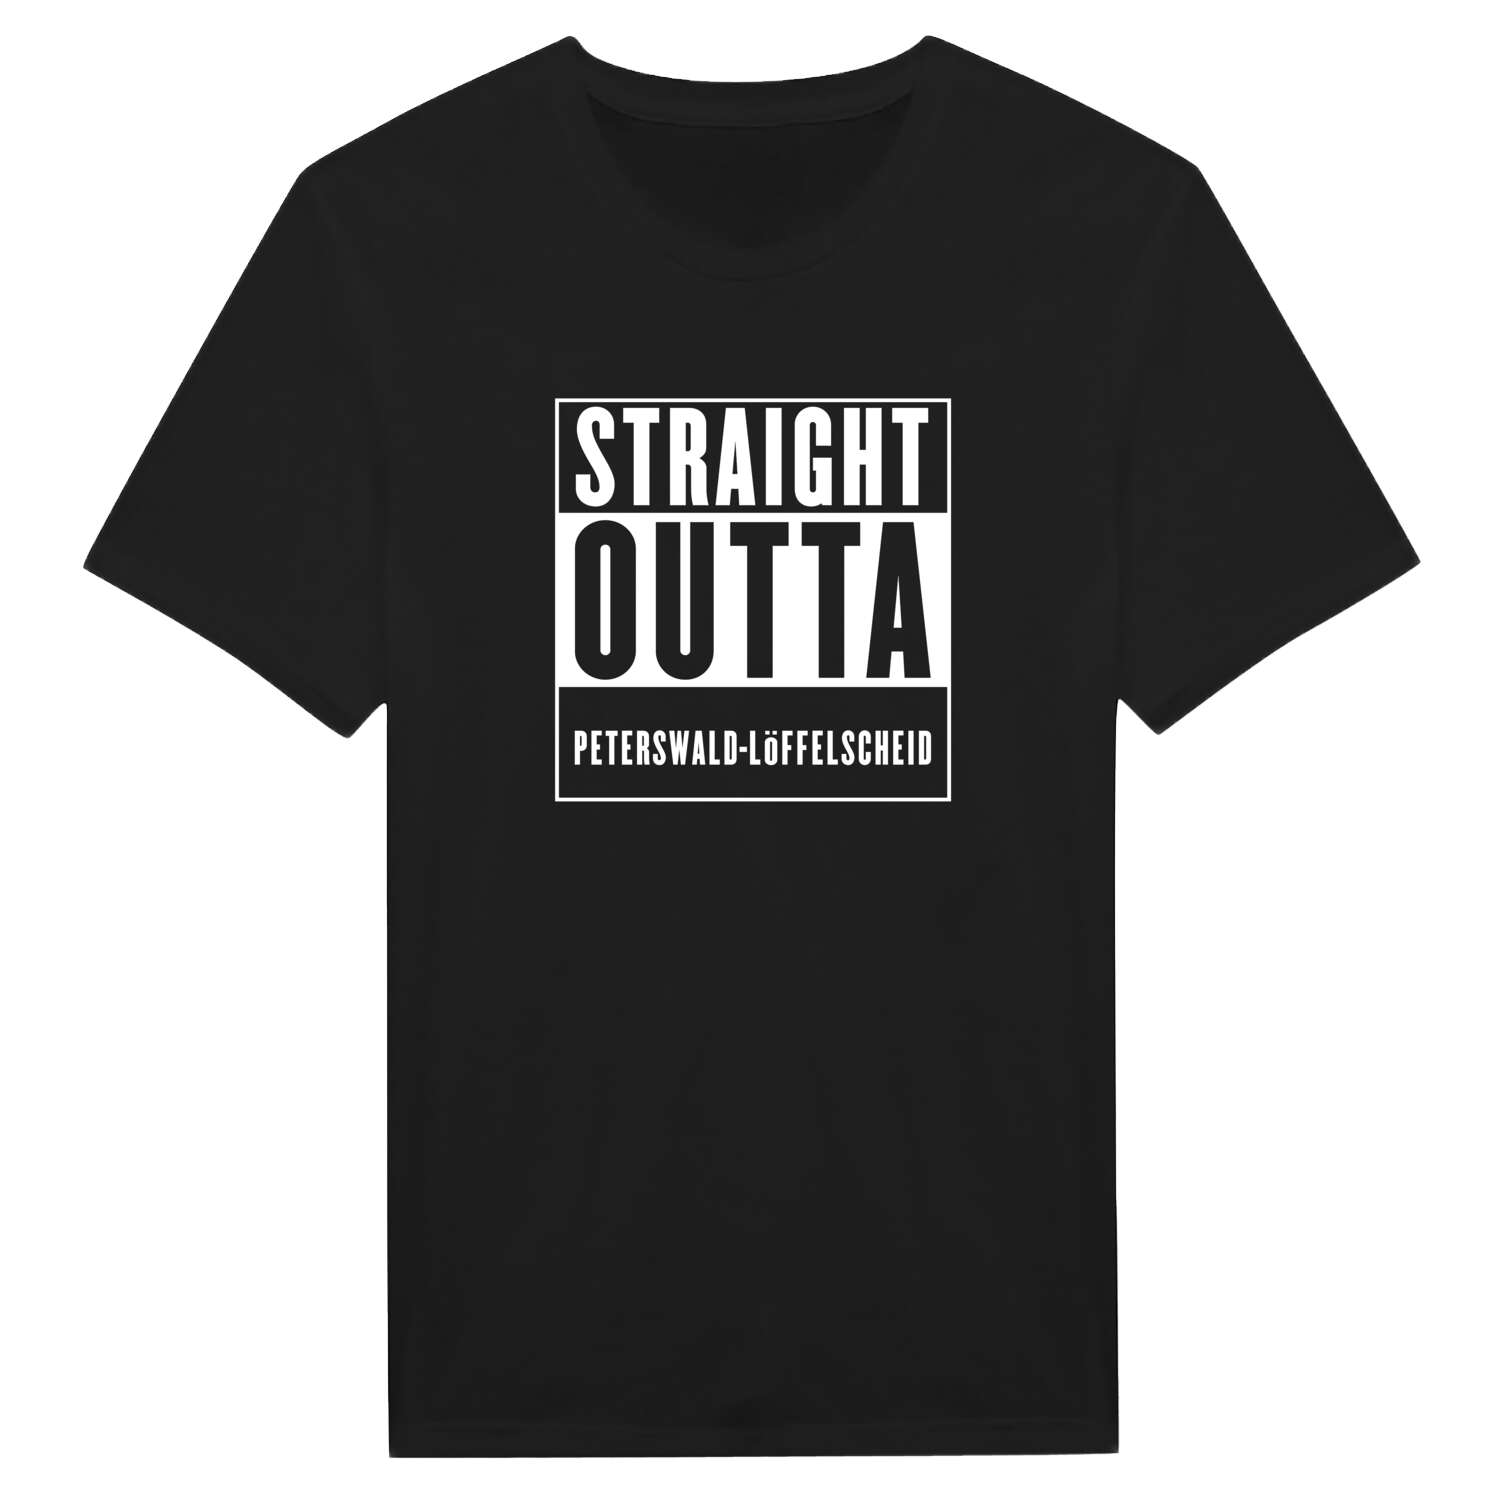 Peterswald-Löffelscheid T-Shirt »Straight Outta«